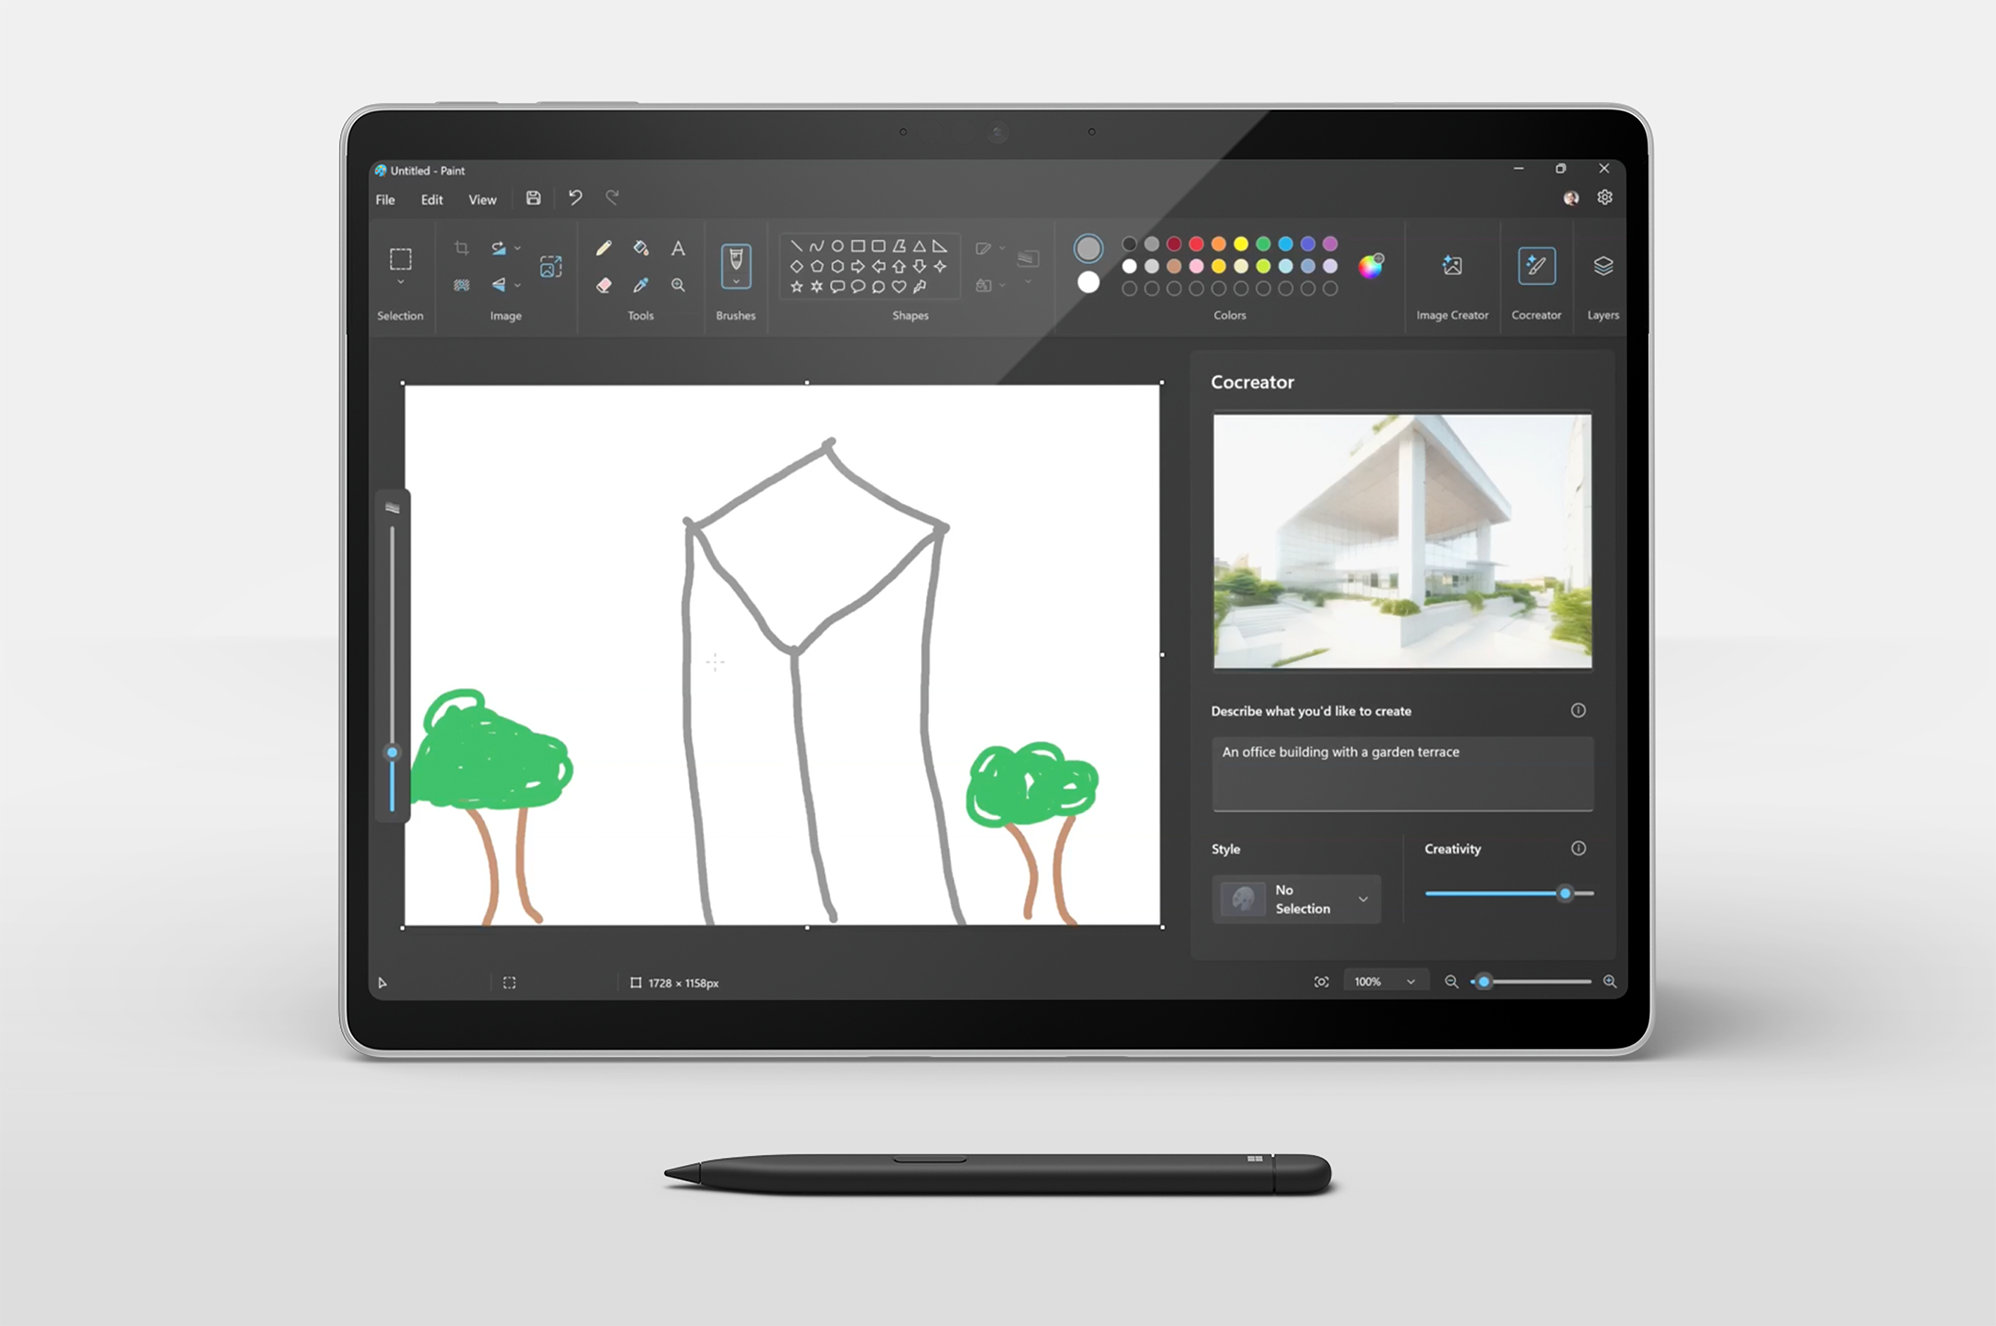 Uma imagem do dispositivo Surface Pro com o teclado destacado a apresentar o ecrã do Cocriador